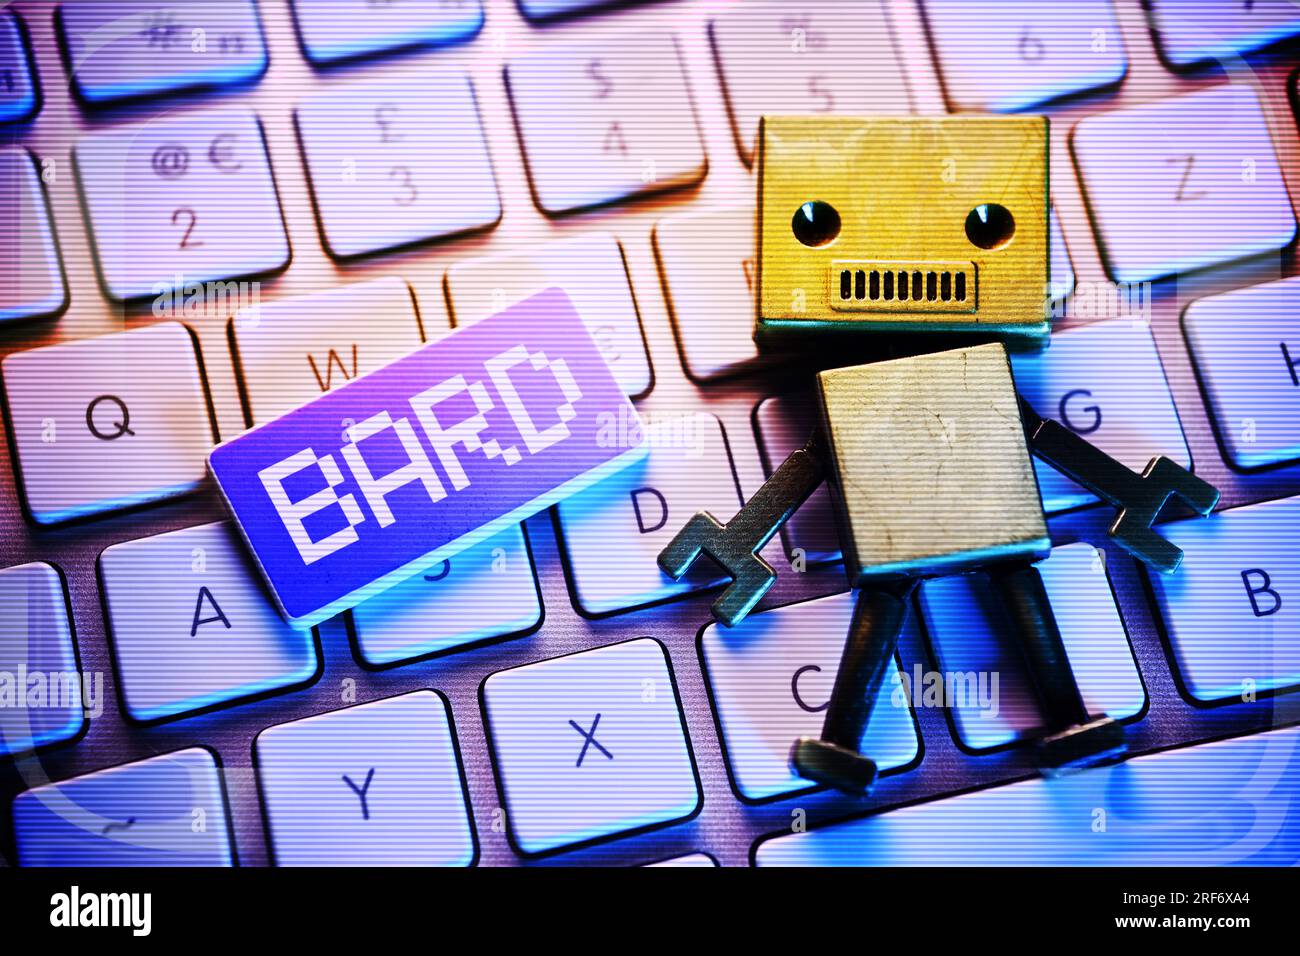 FOTOMONTAGE, Roboterfigur auf einer Computertastatur und Taste mit Aufschrift Bard, Google-KI Stock Photo